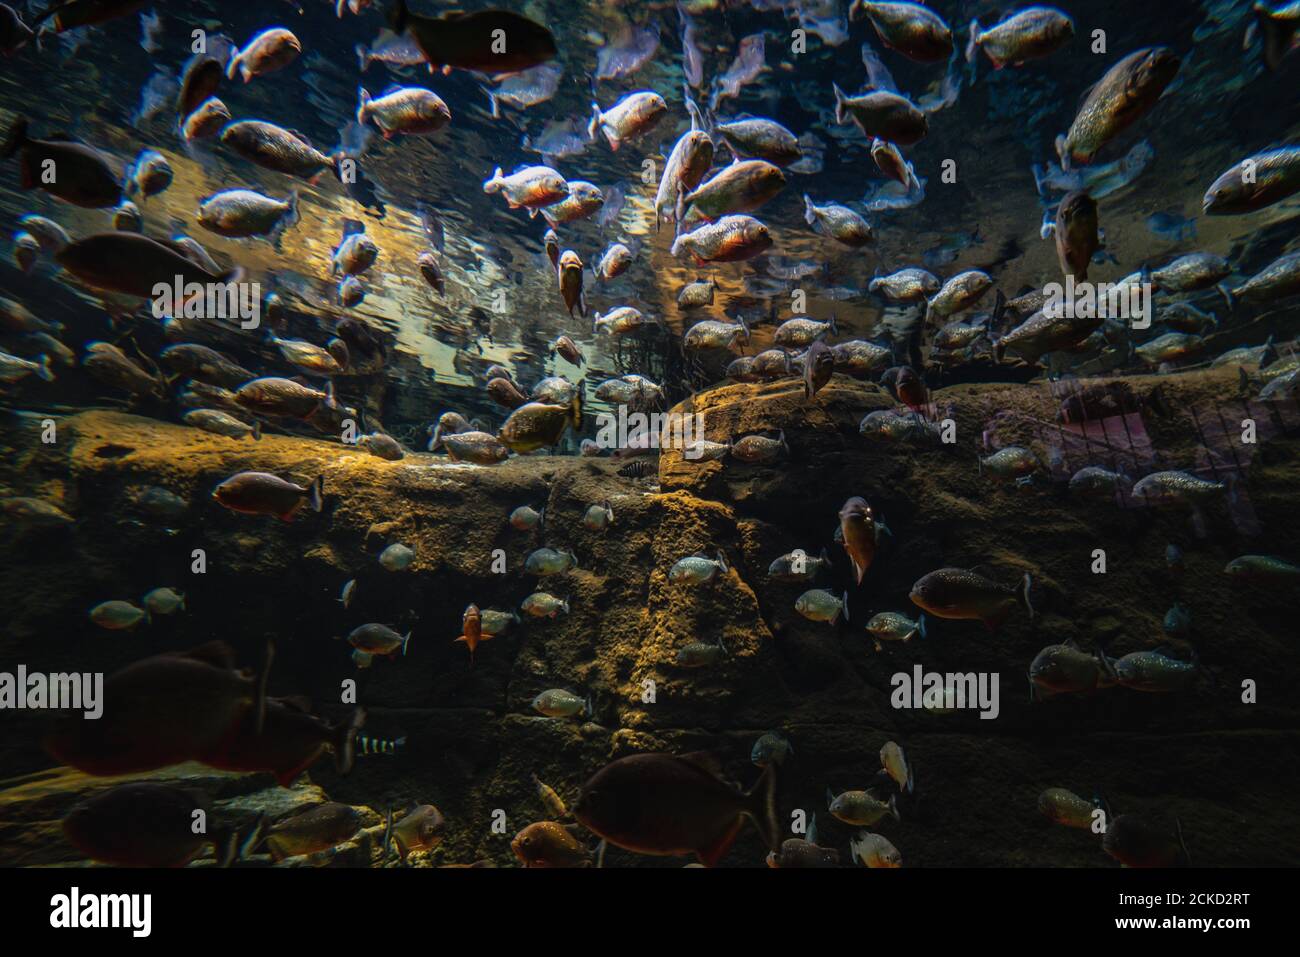 Fischschwärme in einer Unterwasserszene versammelt. Große Gruppe oder Haufen von Fischen unter Wasser verpackt wirft Sorge für Ökosystemnachhaltigkeit Stockfoto